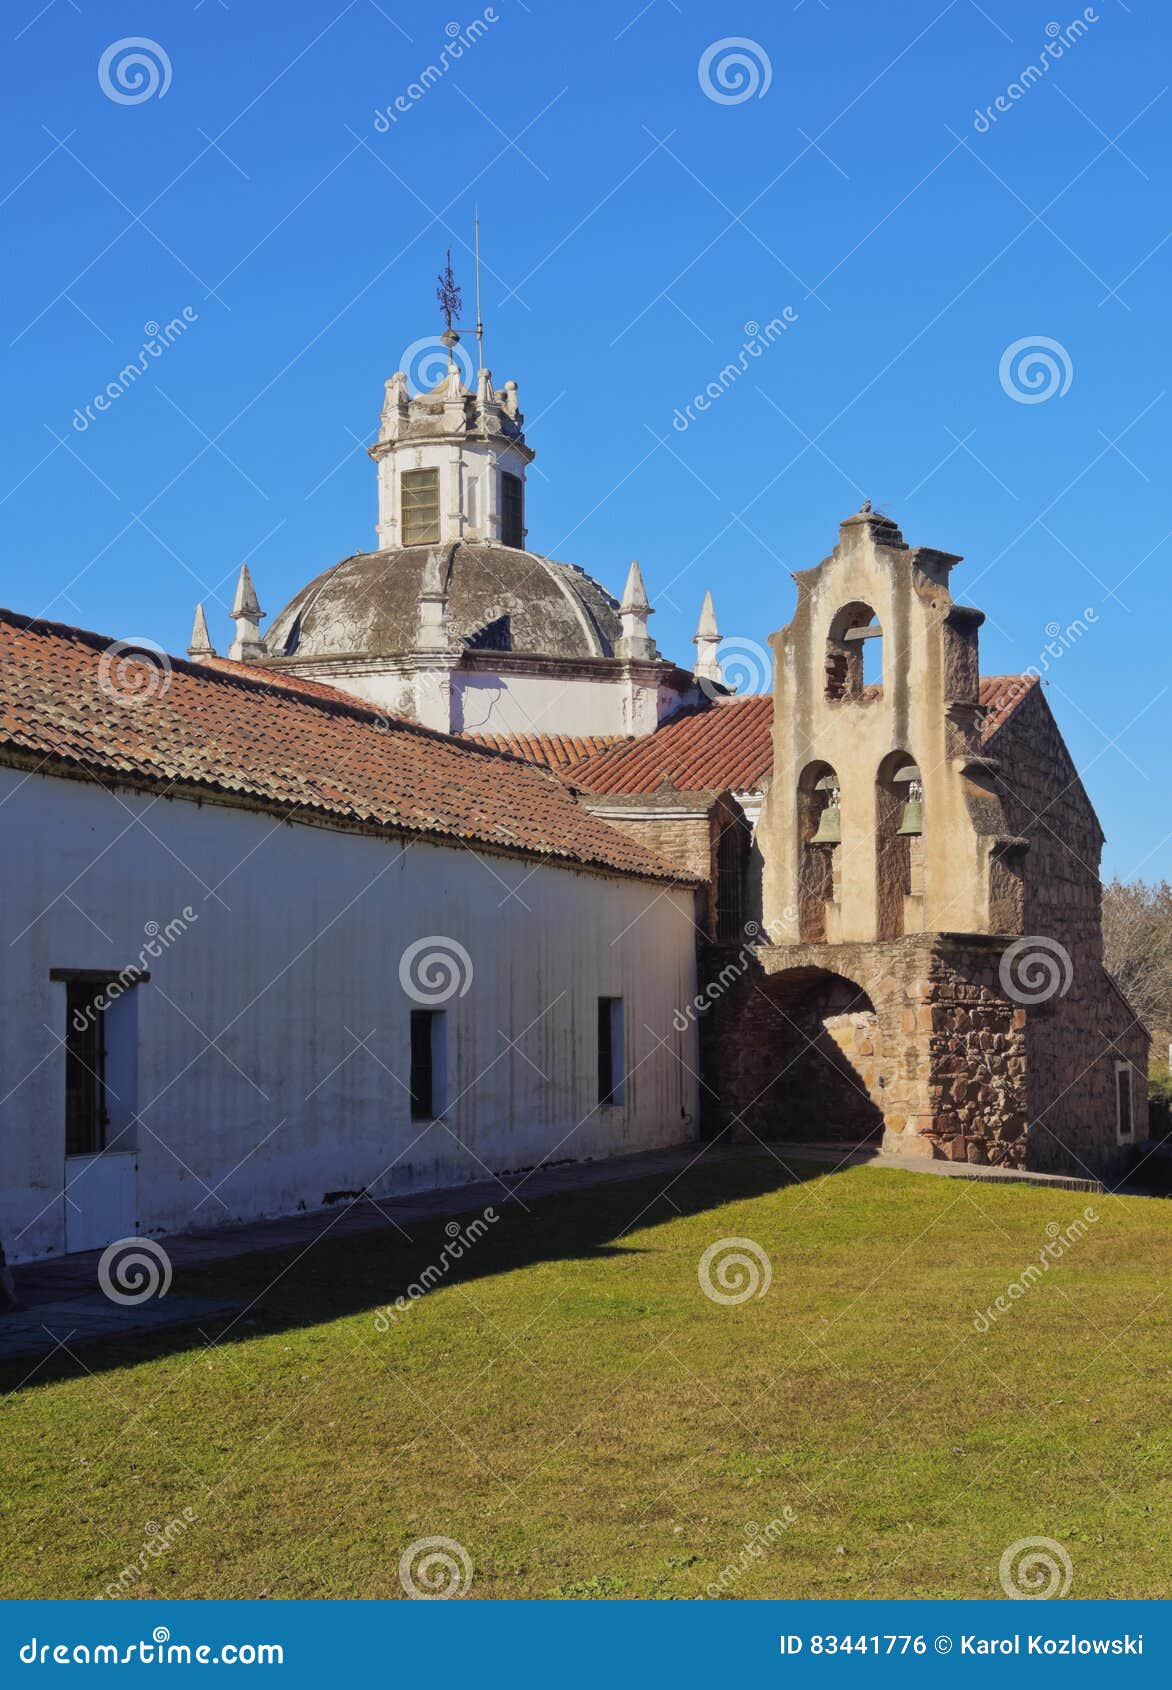 jesuit estancia jesus maria in argentina